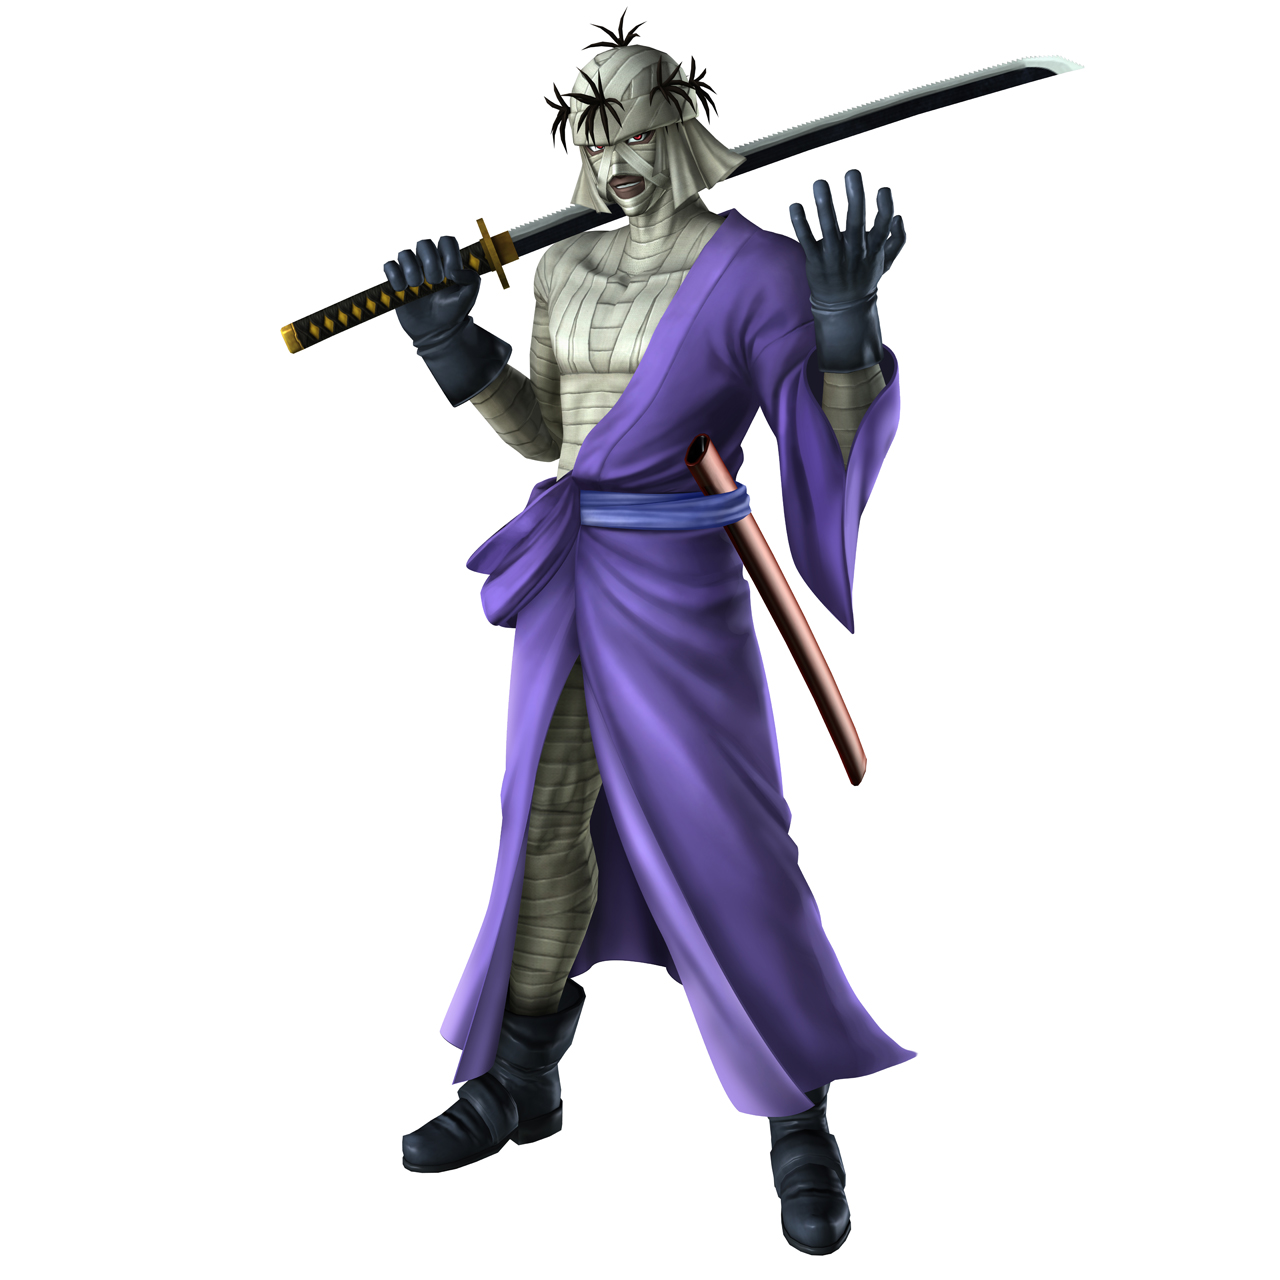 Shishio Makoto, Rurouni Kenshin Wiki, Fandom